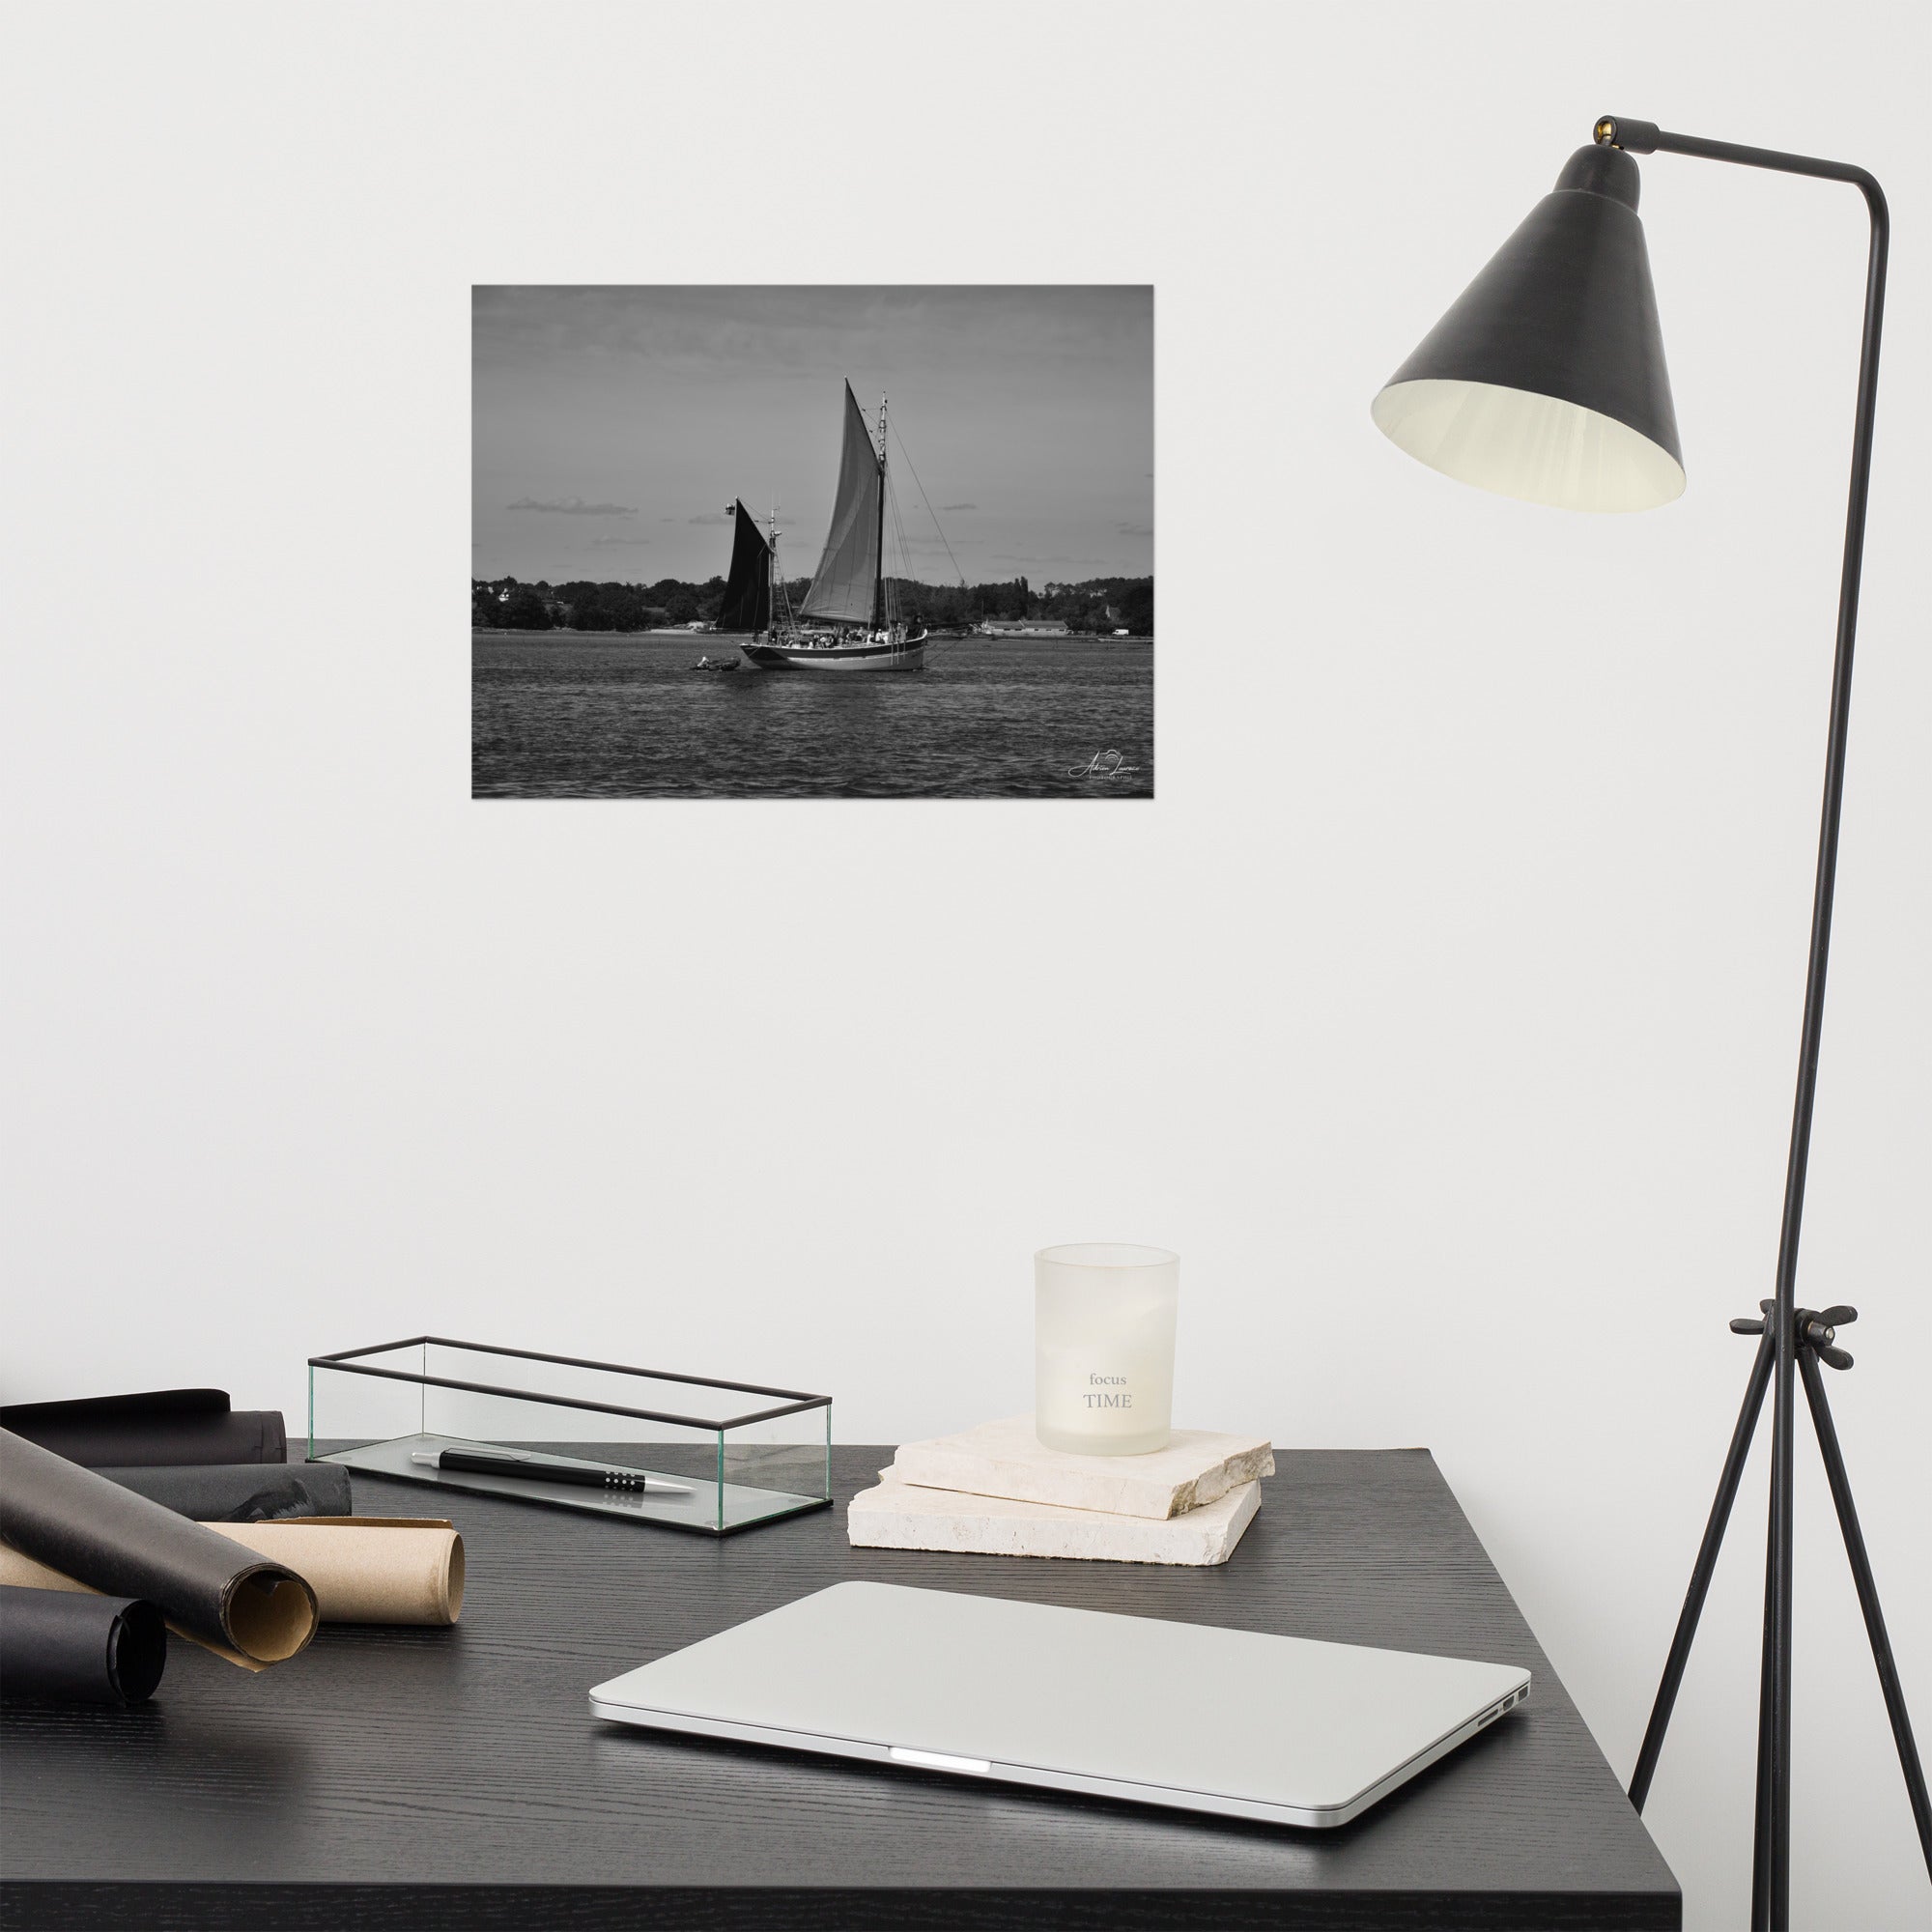 Photographie noir et blanc 'Hissez haut !' par Adrien Louraco, représentant un voilier naviguant sur le Golfe du Morbihan, avec des contrastes saisissants entre mer et ciel.